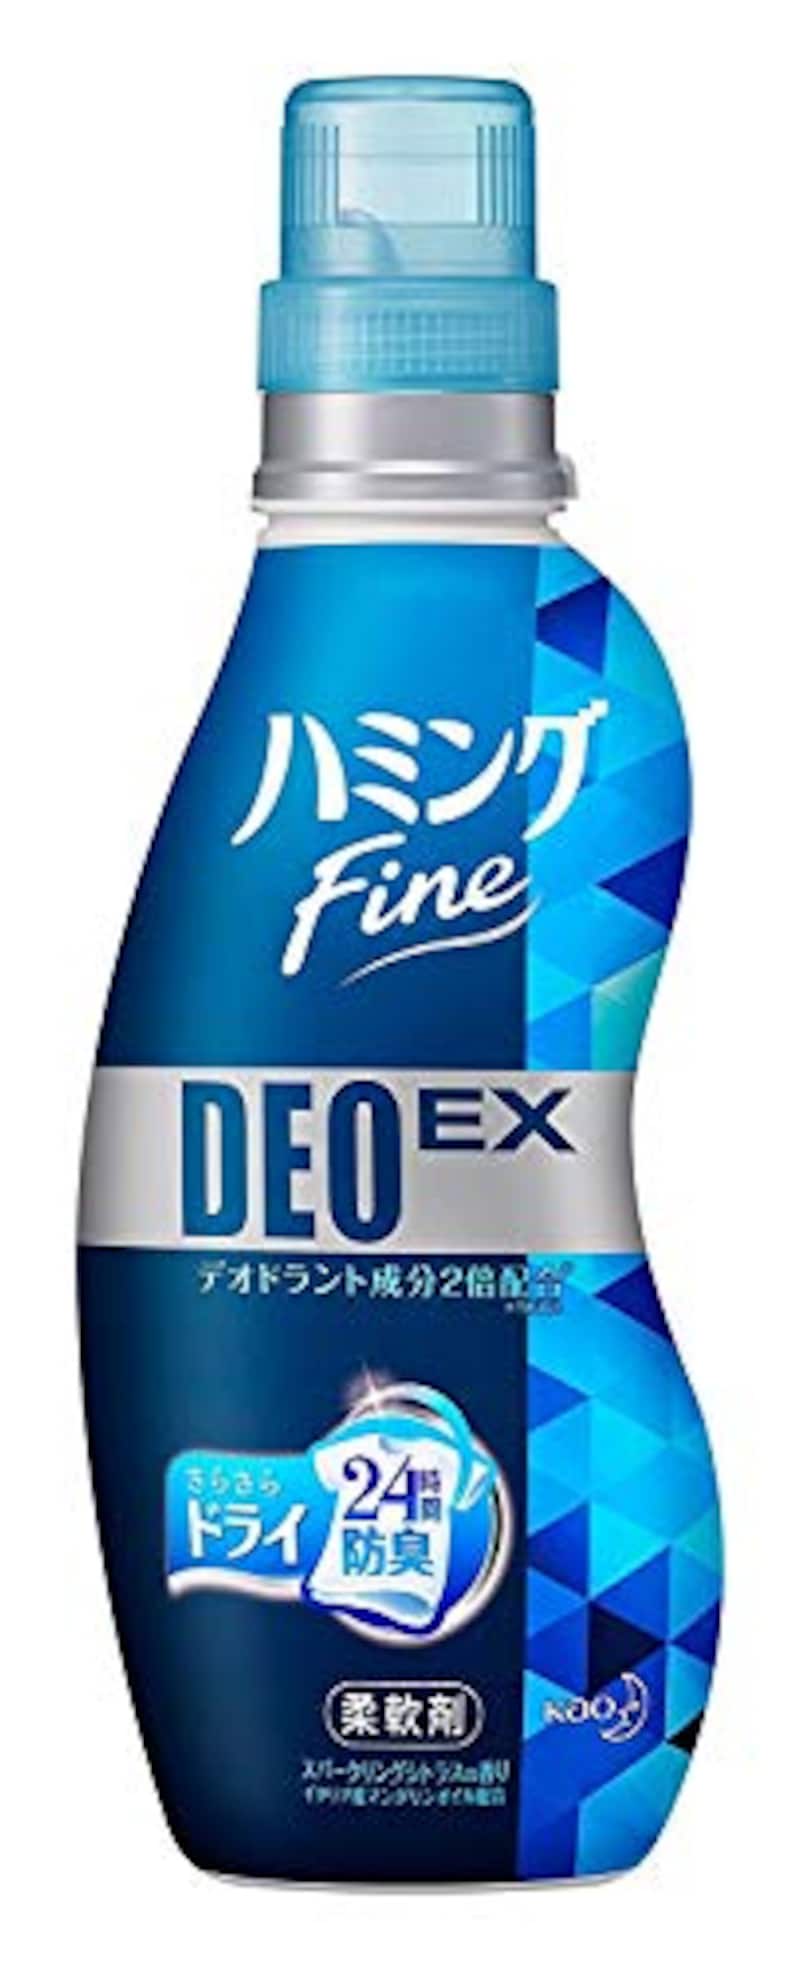 ハミングファイン 柔軟剤 DEOEX スパークリングシトラスの香り 本体 540ml